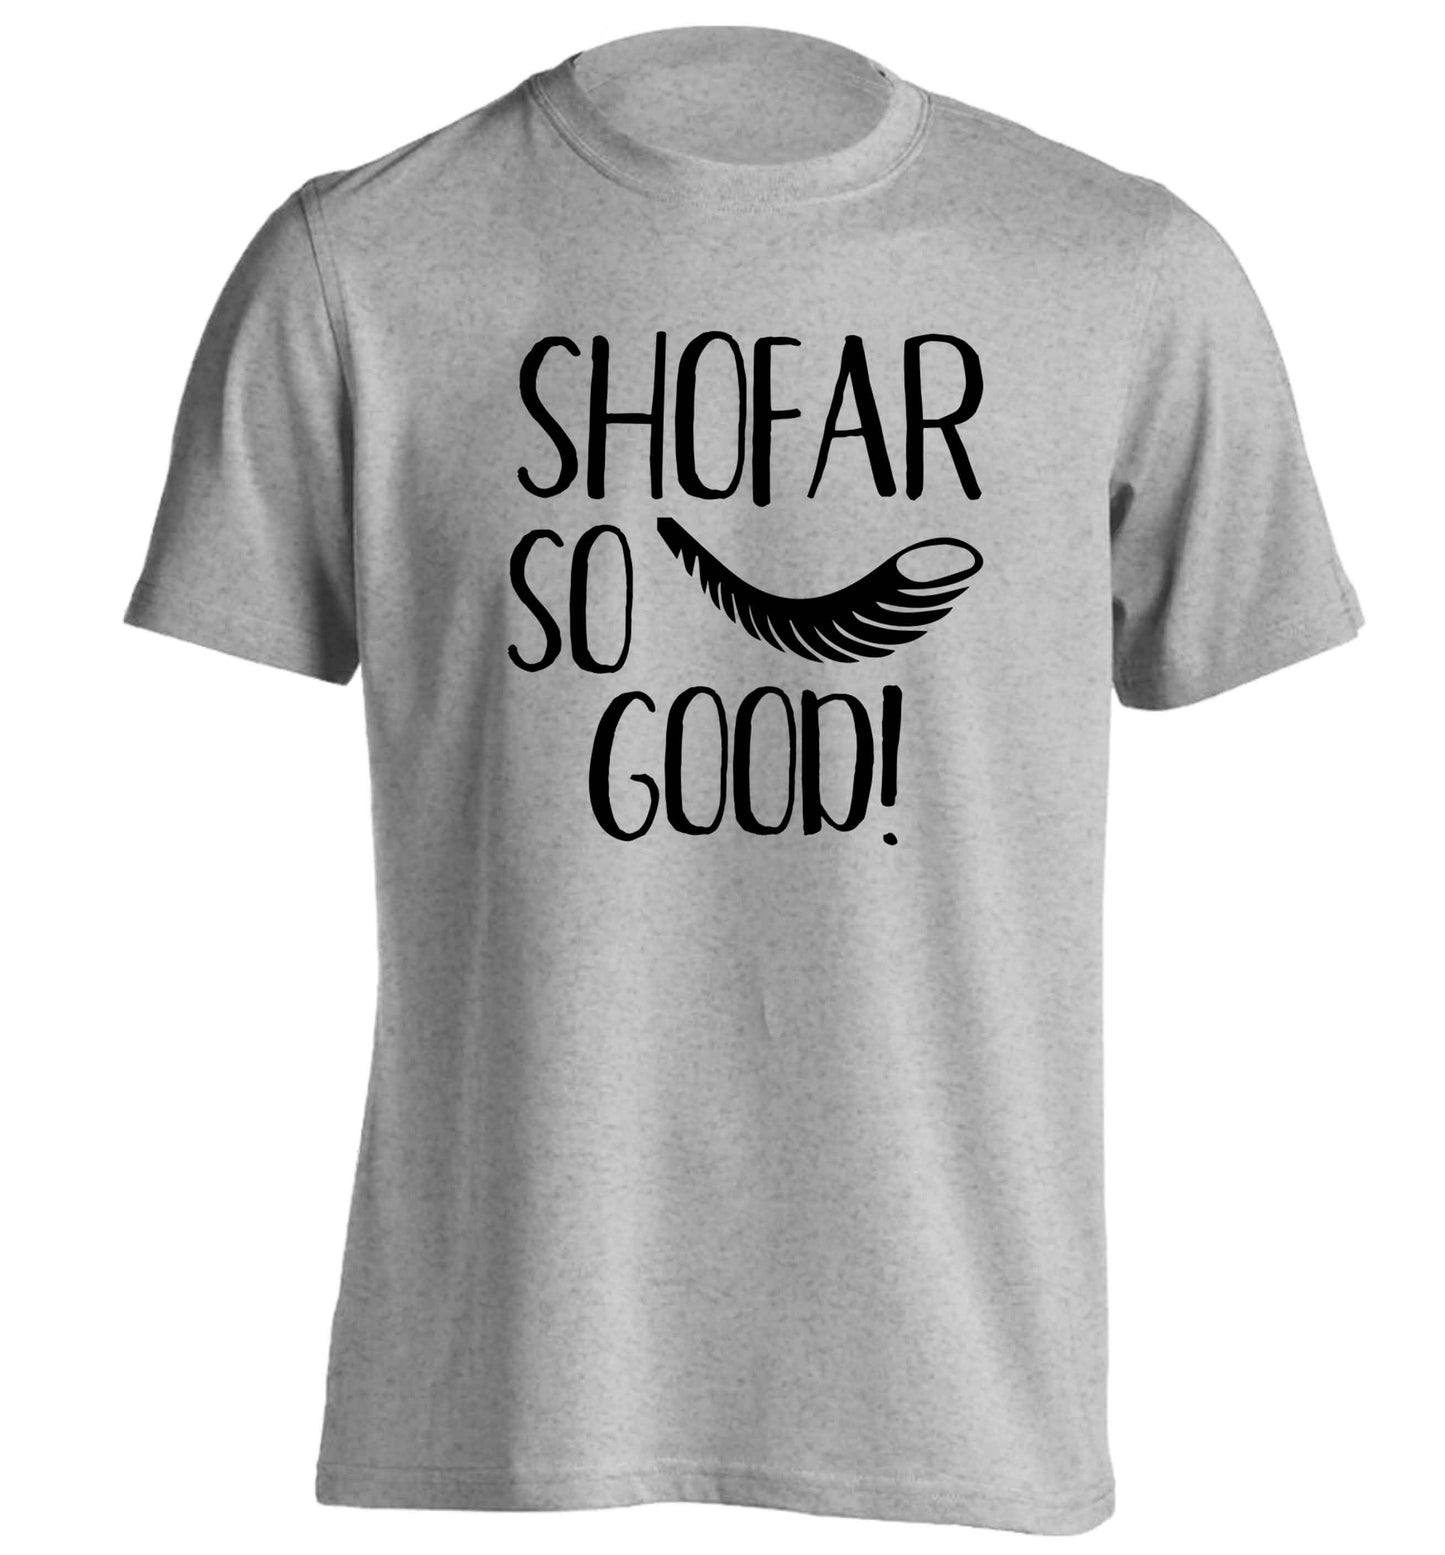 Shofar so good! adults unisex grey Tshirt 2XL